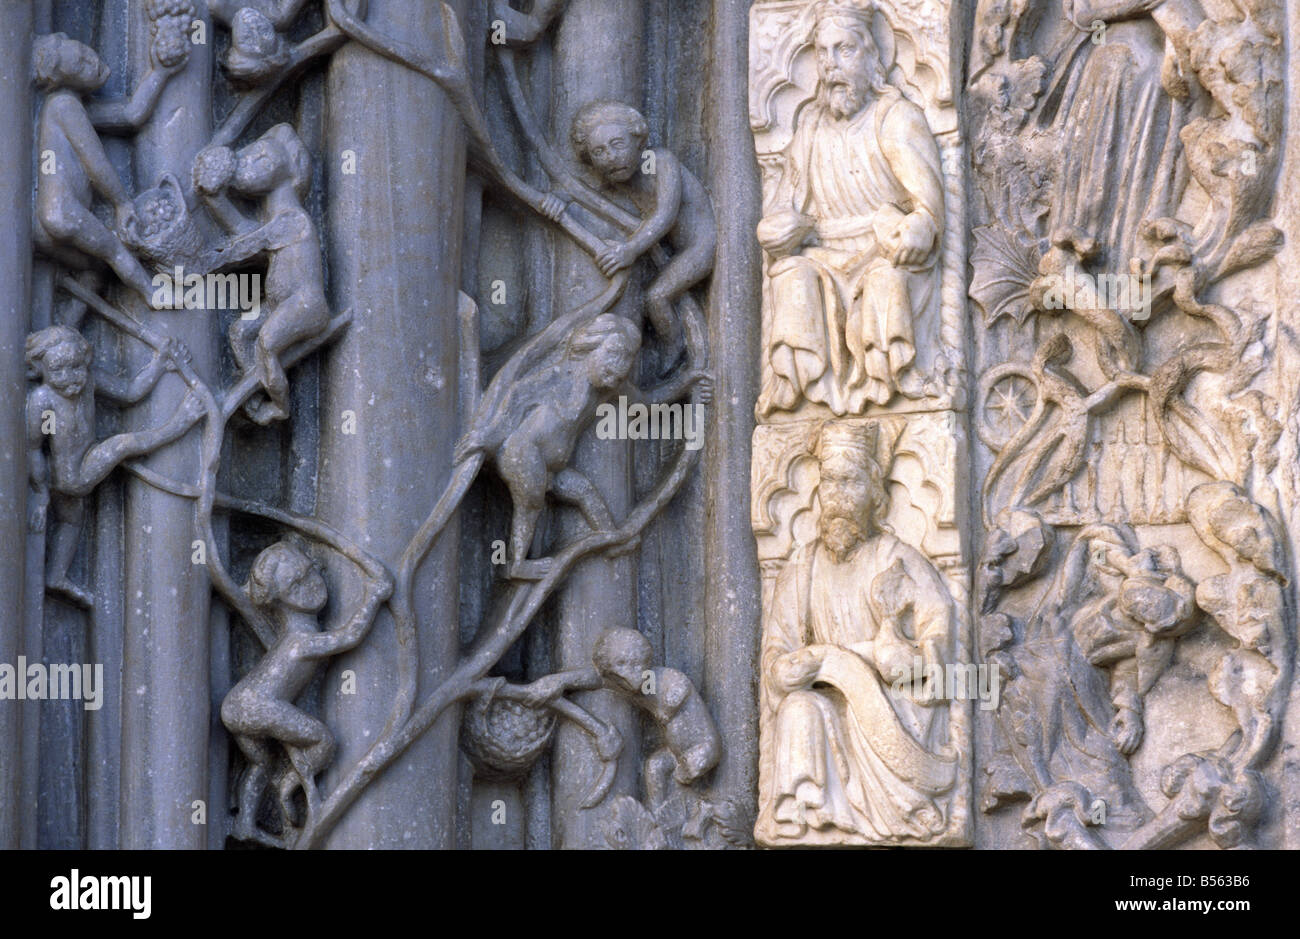 La Cathédrale de Messine, Sicile, Italie. Feuille de vigne en pierre sculpté gothique motif de défilement sur le portail central de la façade ouest Banque D'Images